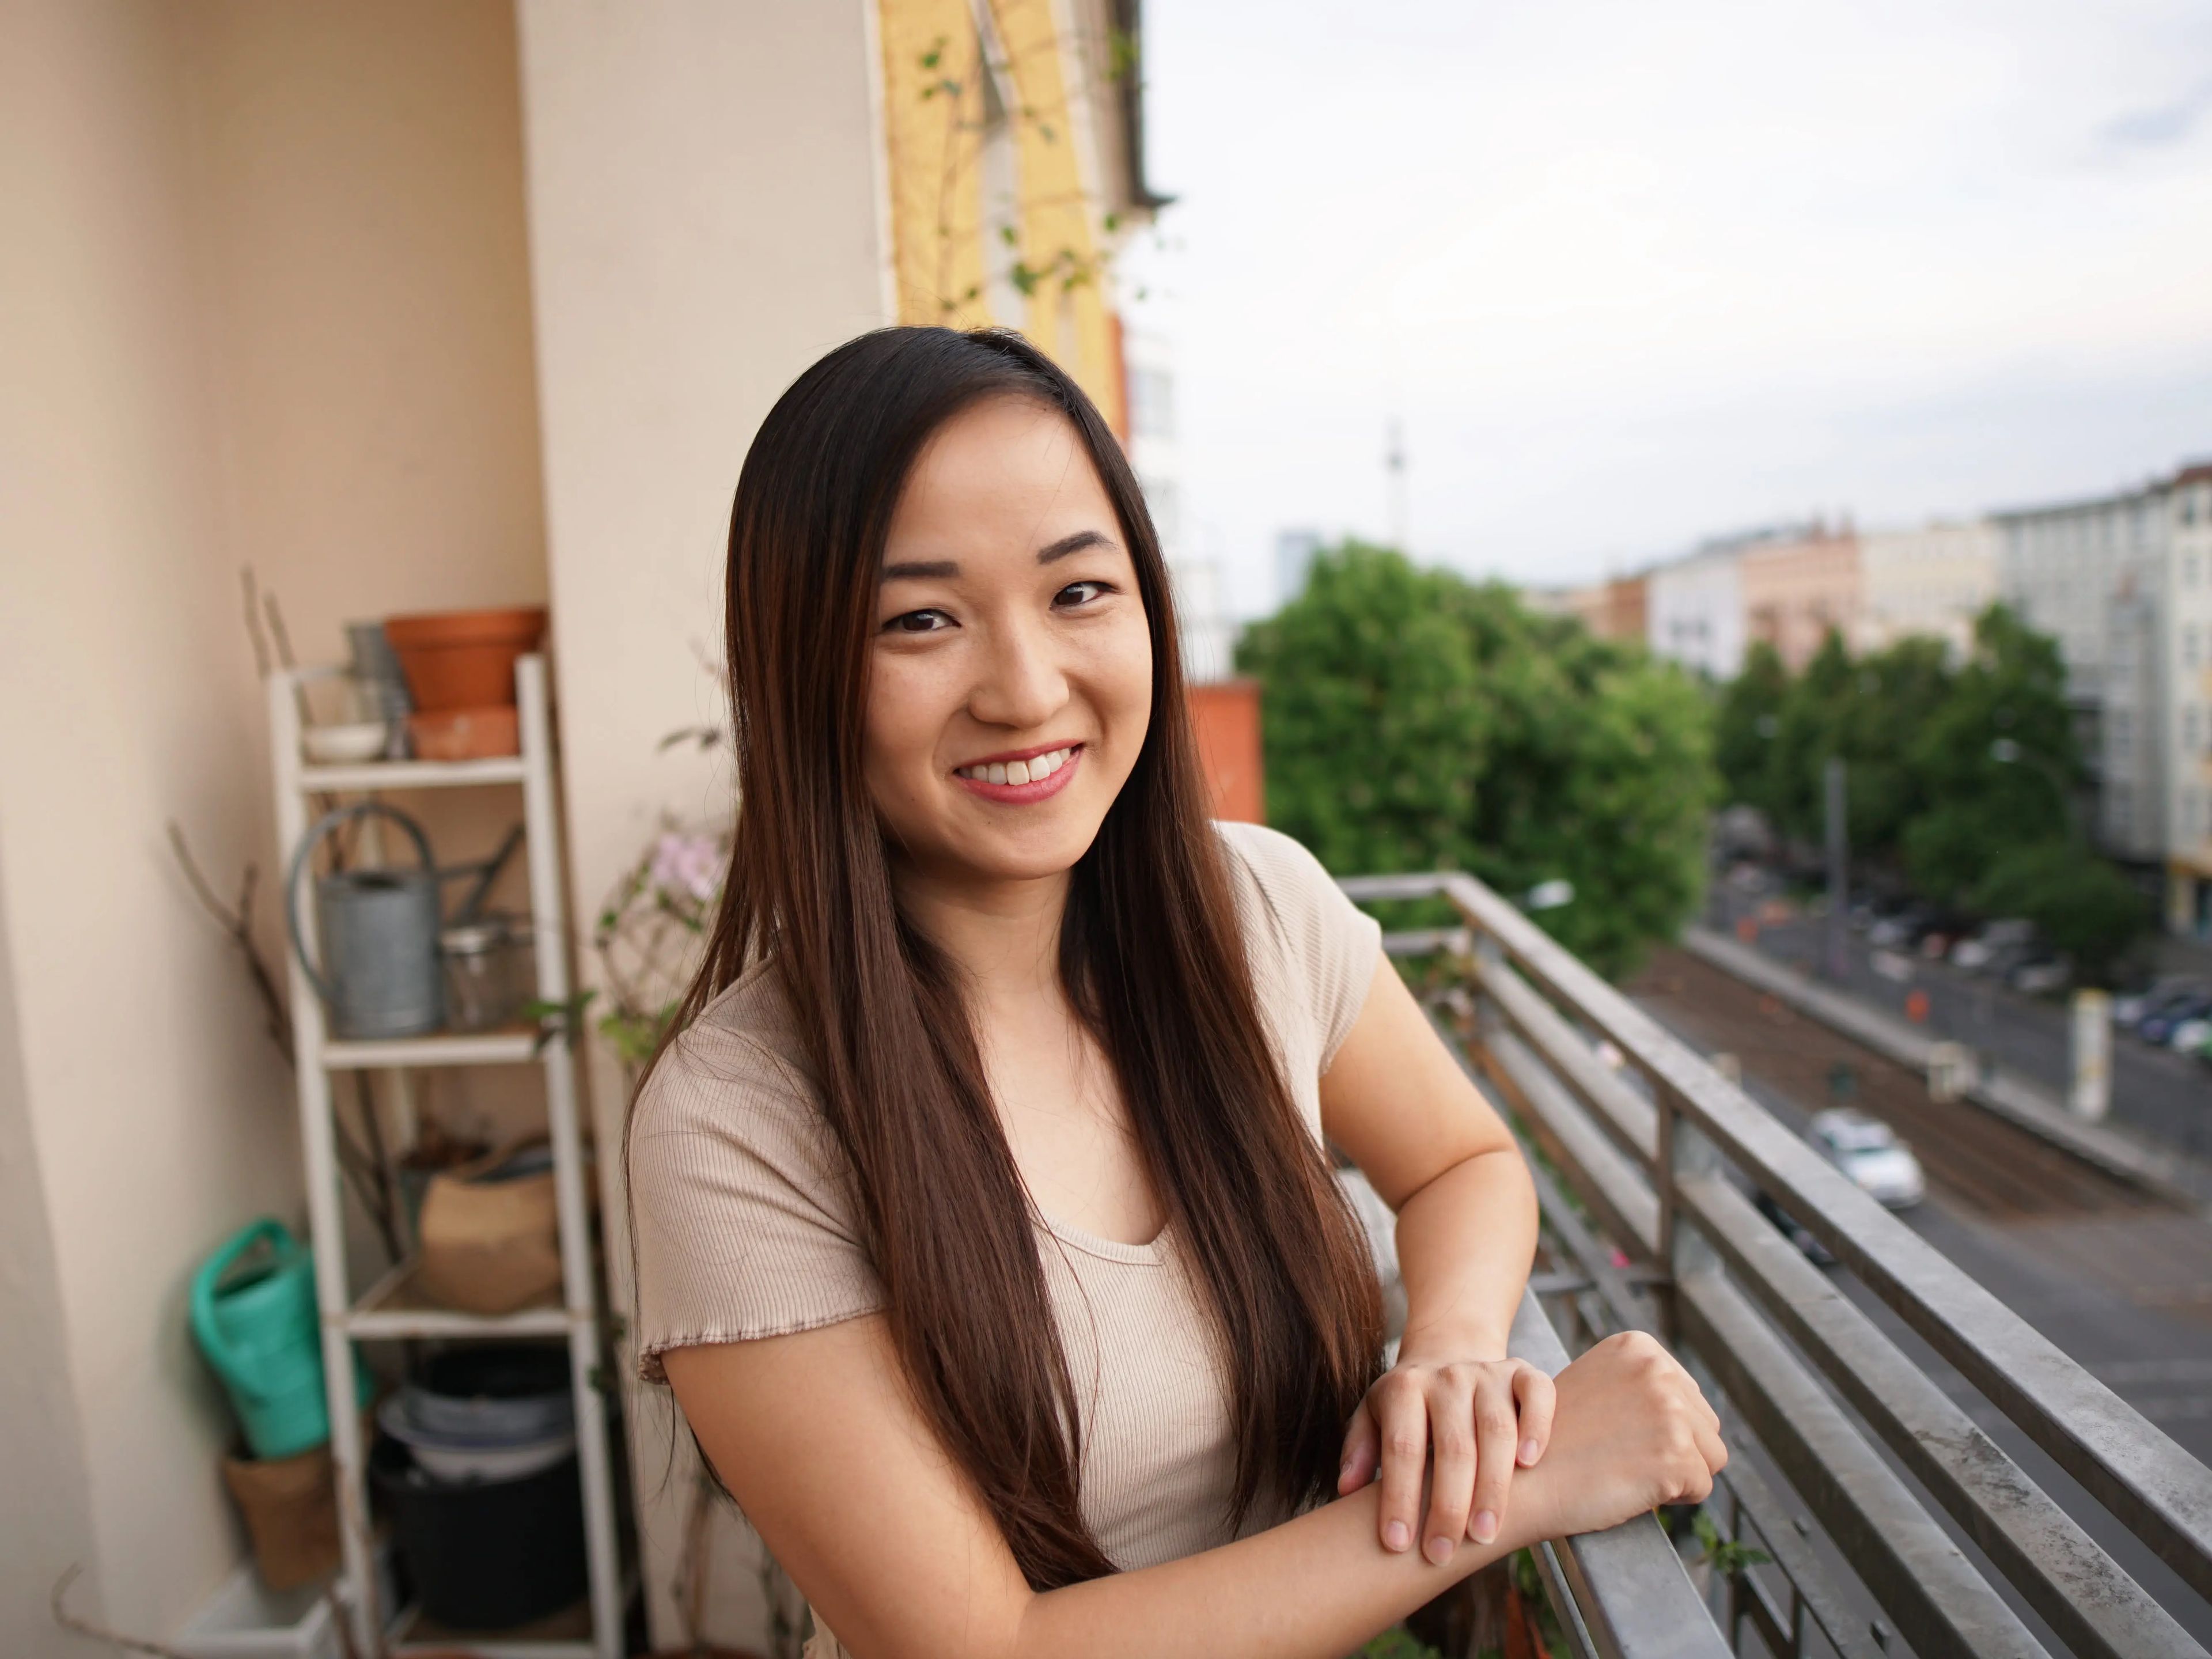 Sharon Tseung comenzó a invertir y ahorrar muy joven para construir su patrimonio.